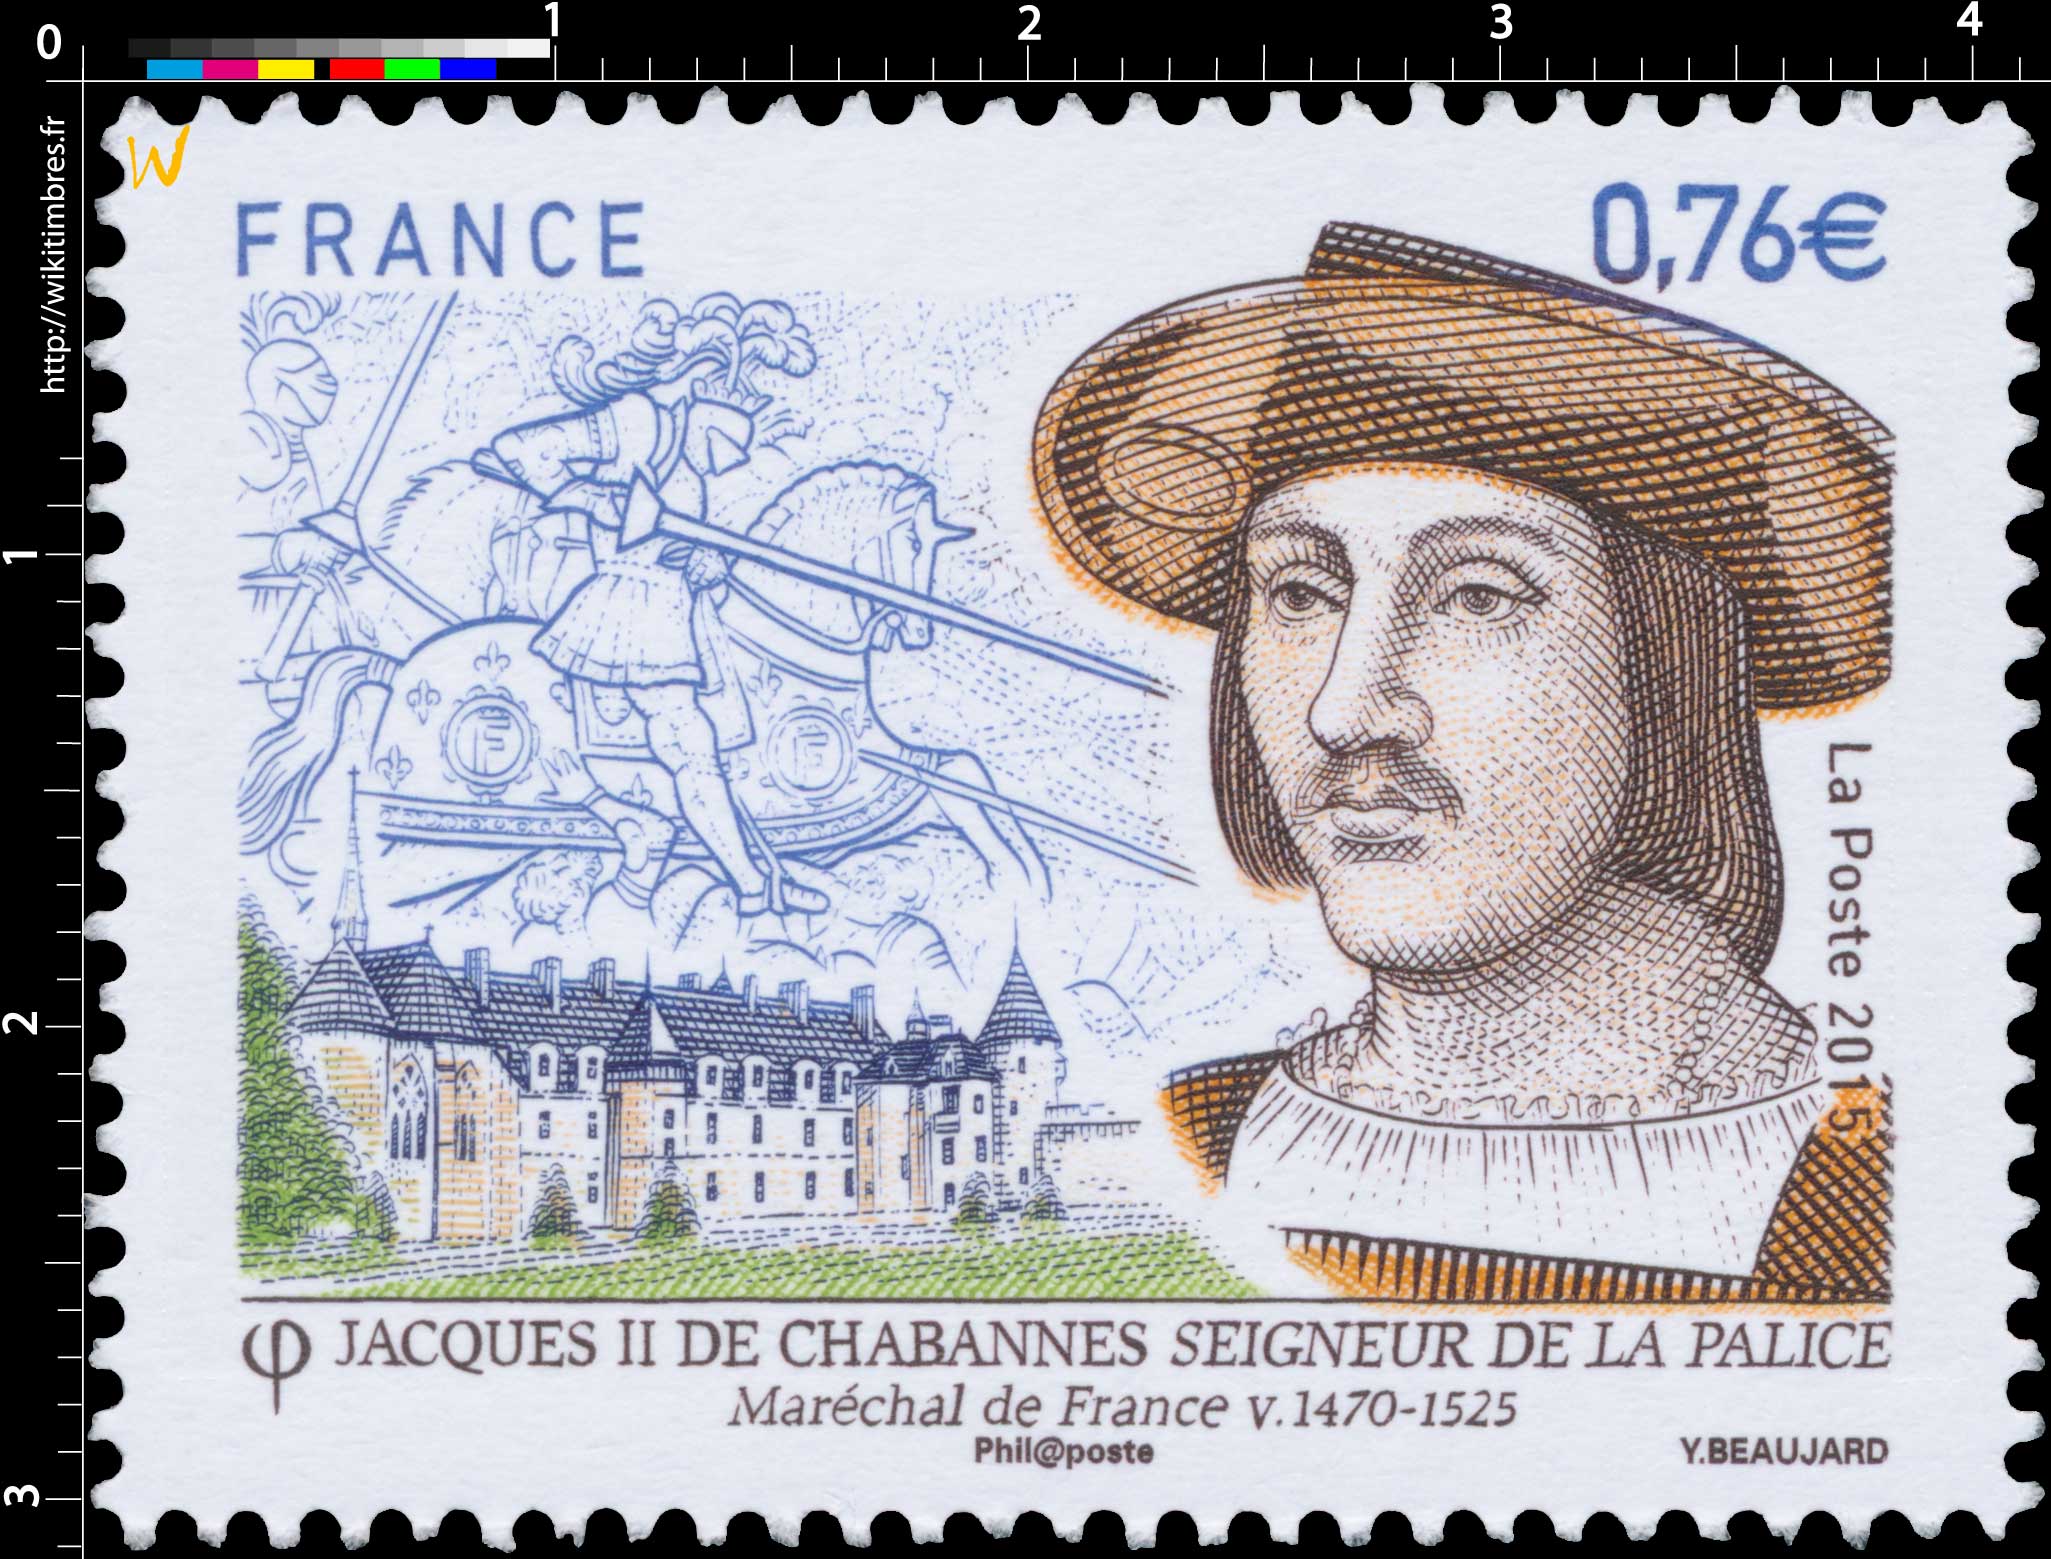 2015 Jacques II de Chabannes Seigneur de La Palice Maréchal de France v.1470-1525